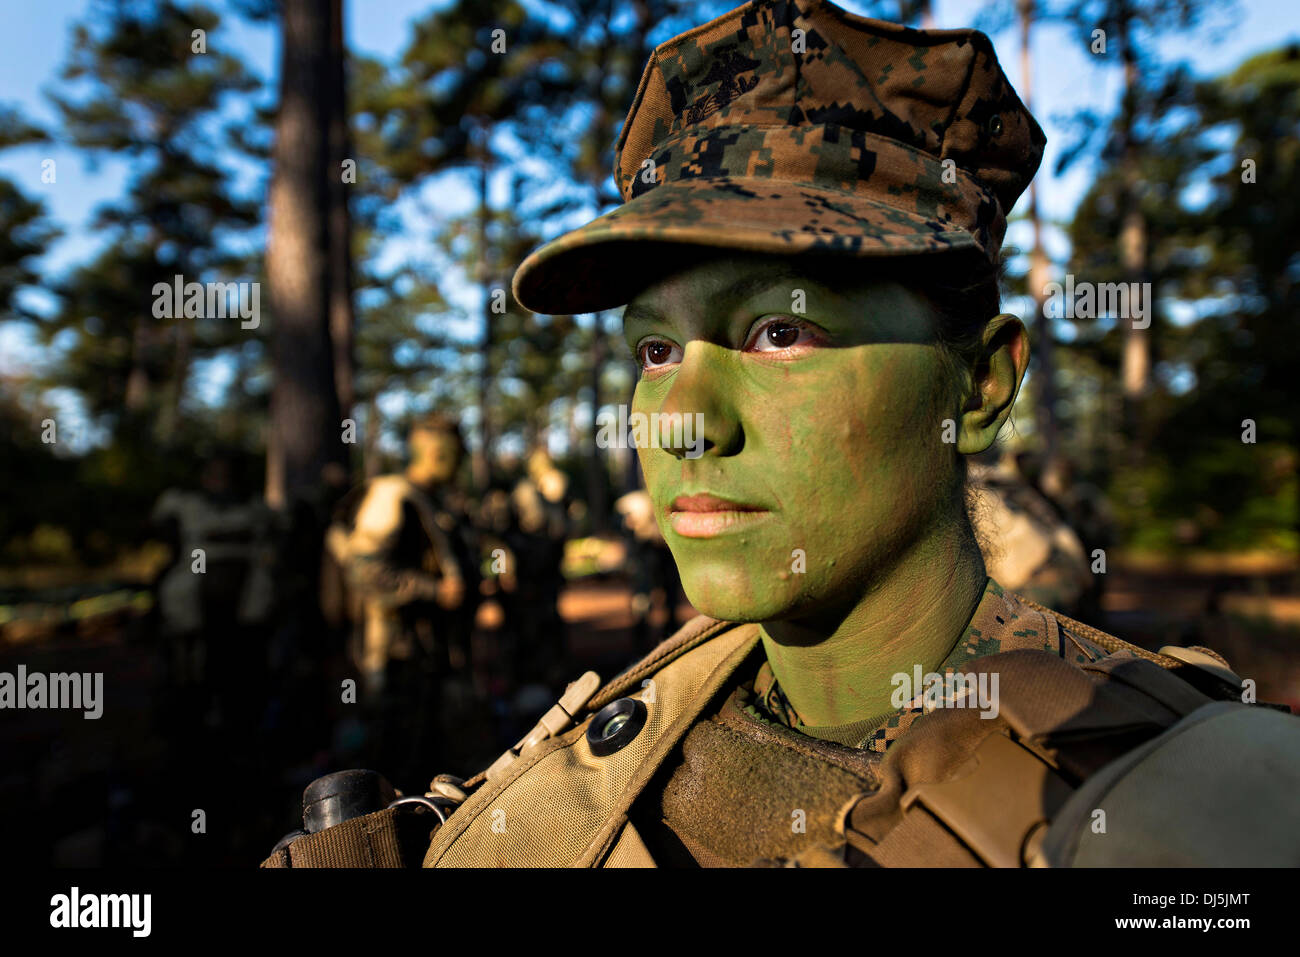 La FPC. Christina Fuentes Monténégro lors de l'exercice d'entraînement intégré sur le terrain d'infanterie le 31 octobre 2013 à Camp Geiger, N.C. Le Monténégro est l'une des trois femmes Marines d'être les premières femmes à obtenir un diplôme de formation d'infanterie le 21 novembre 2013. Banque D'Images